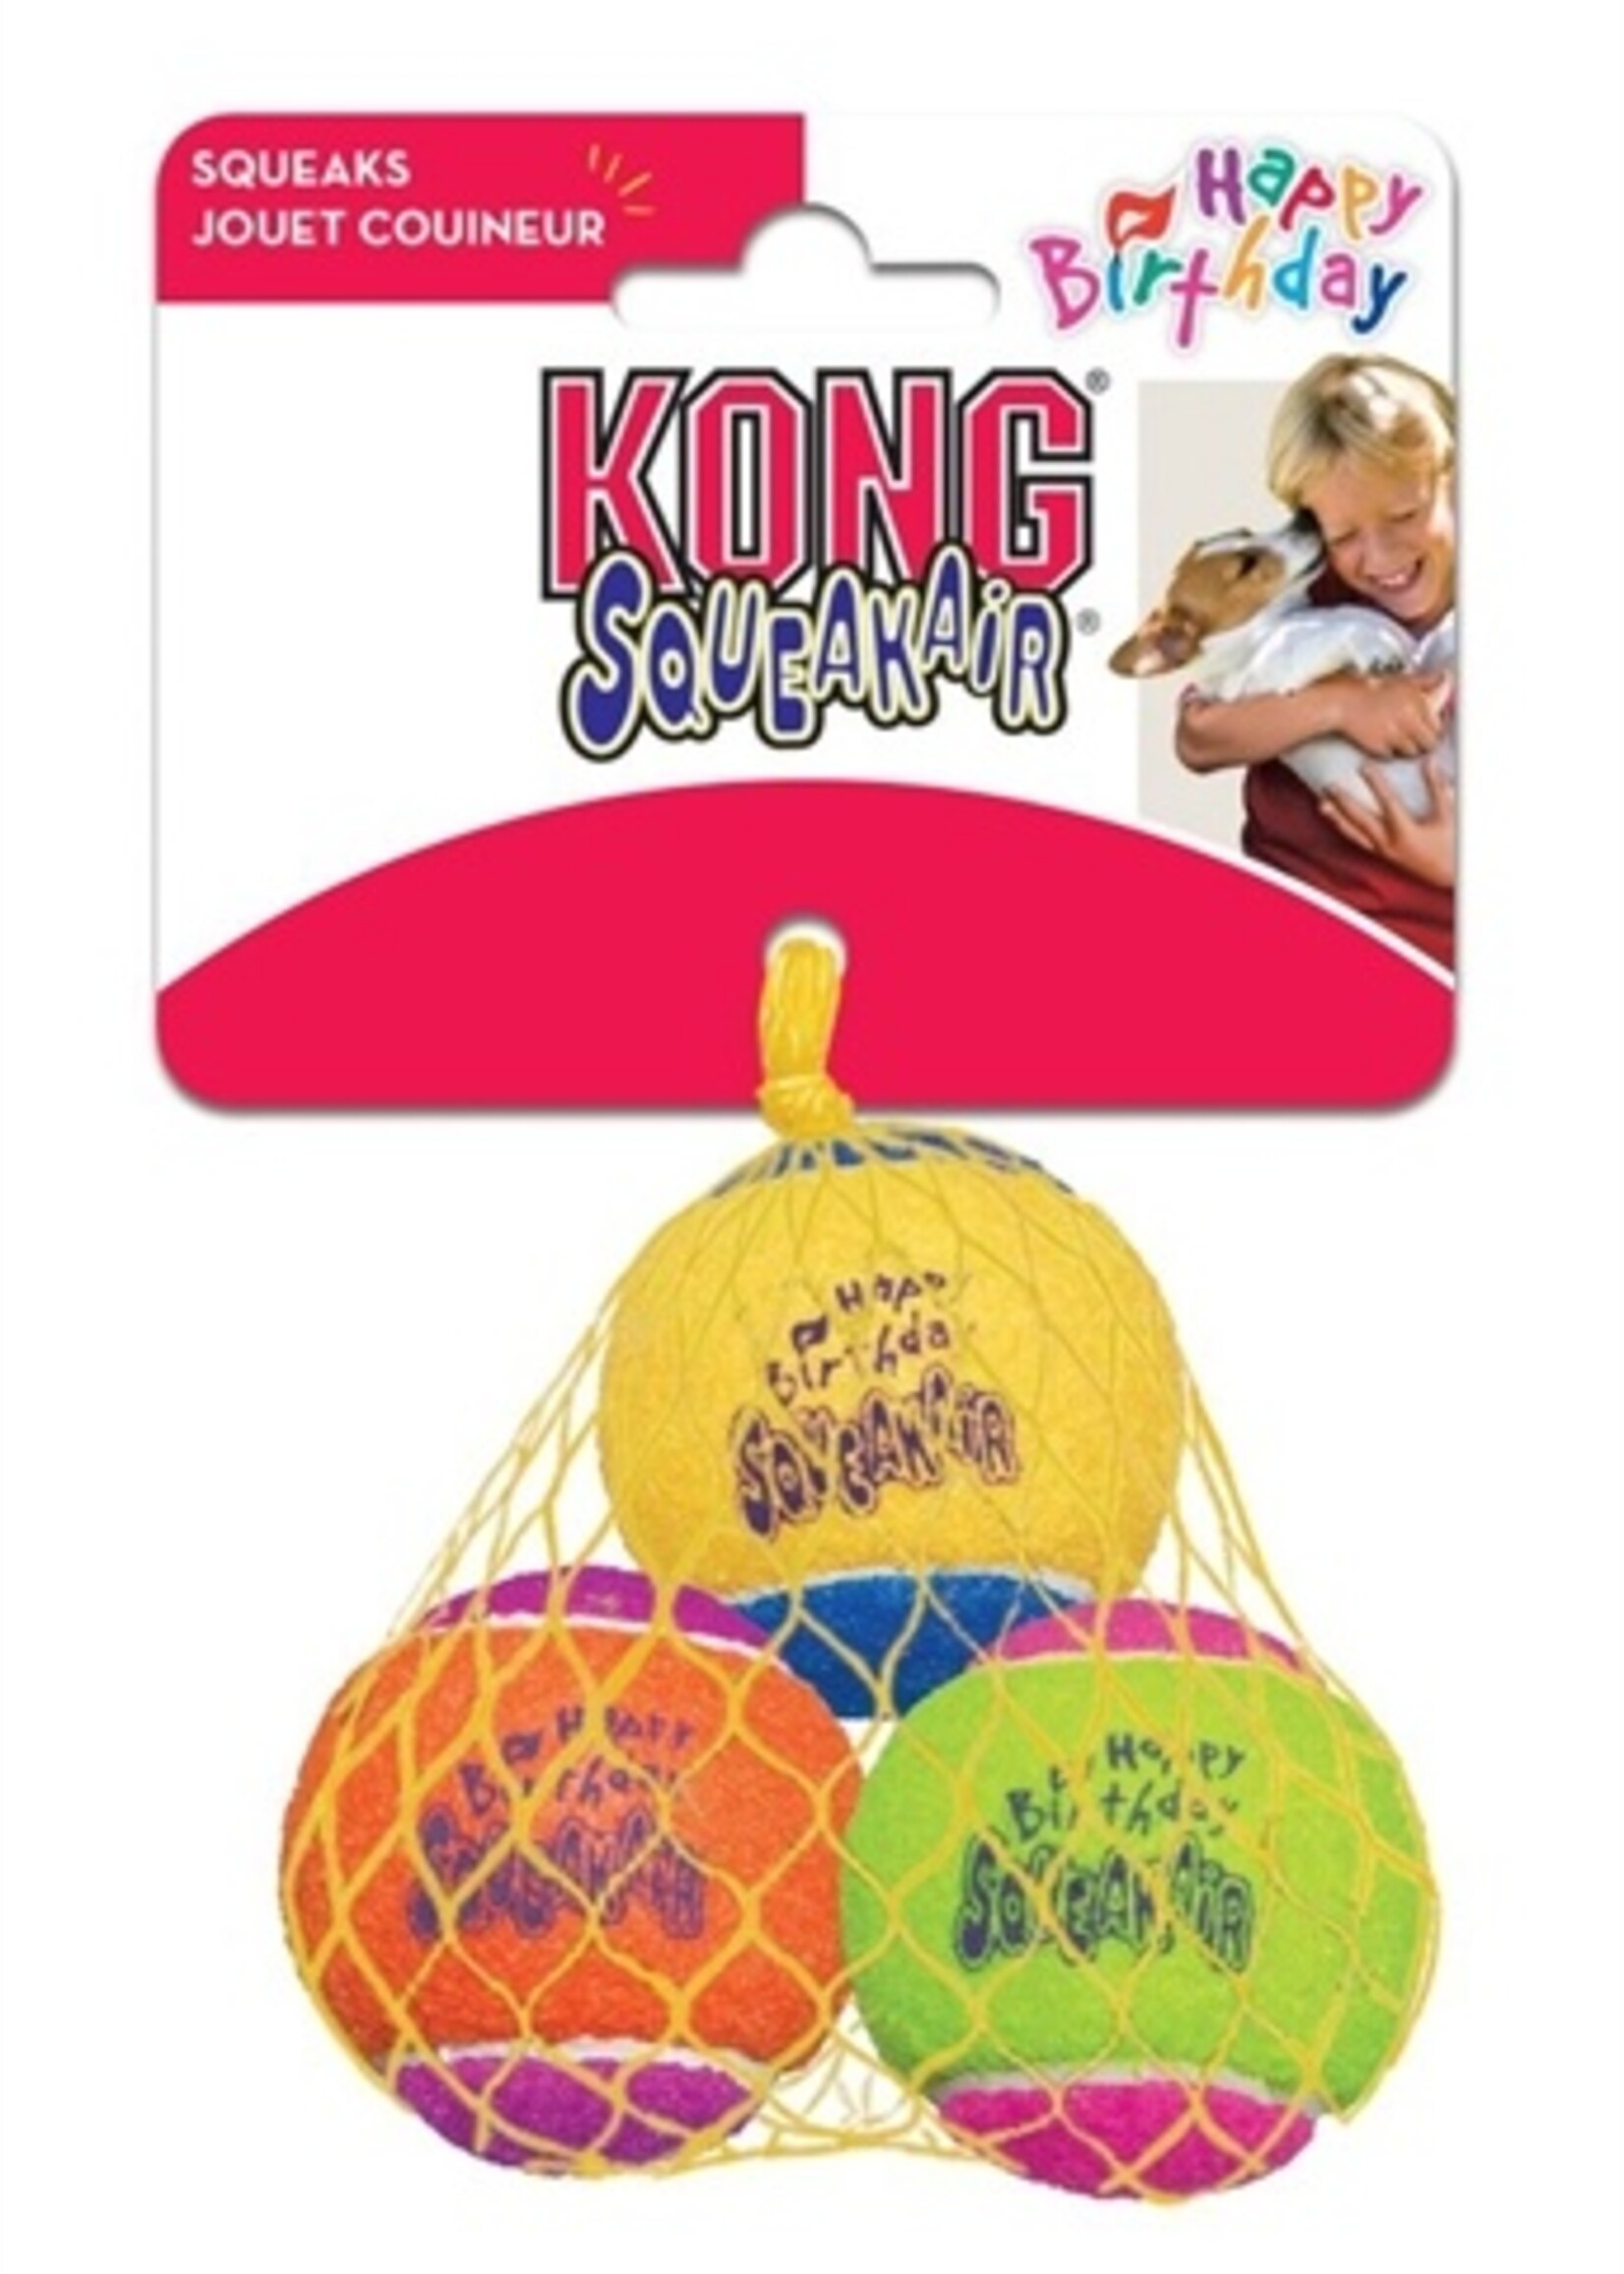 Kong Kong squeakair birthday balls